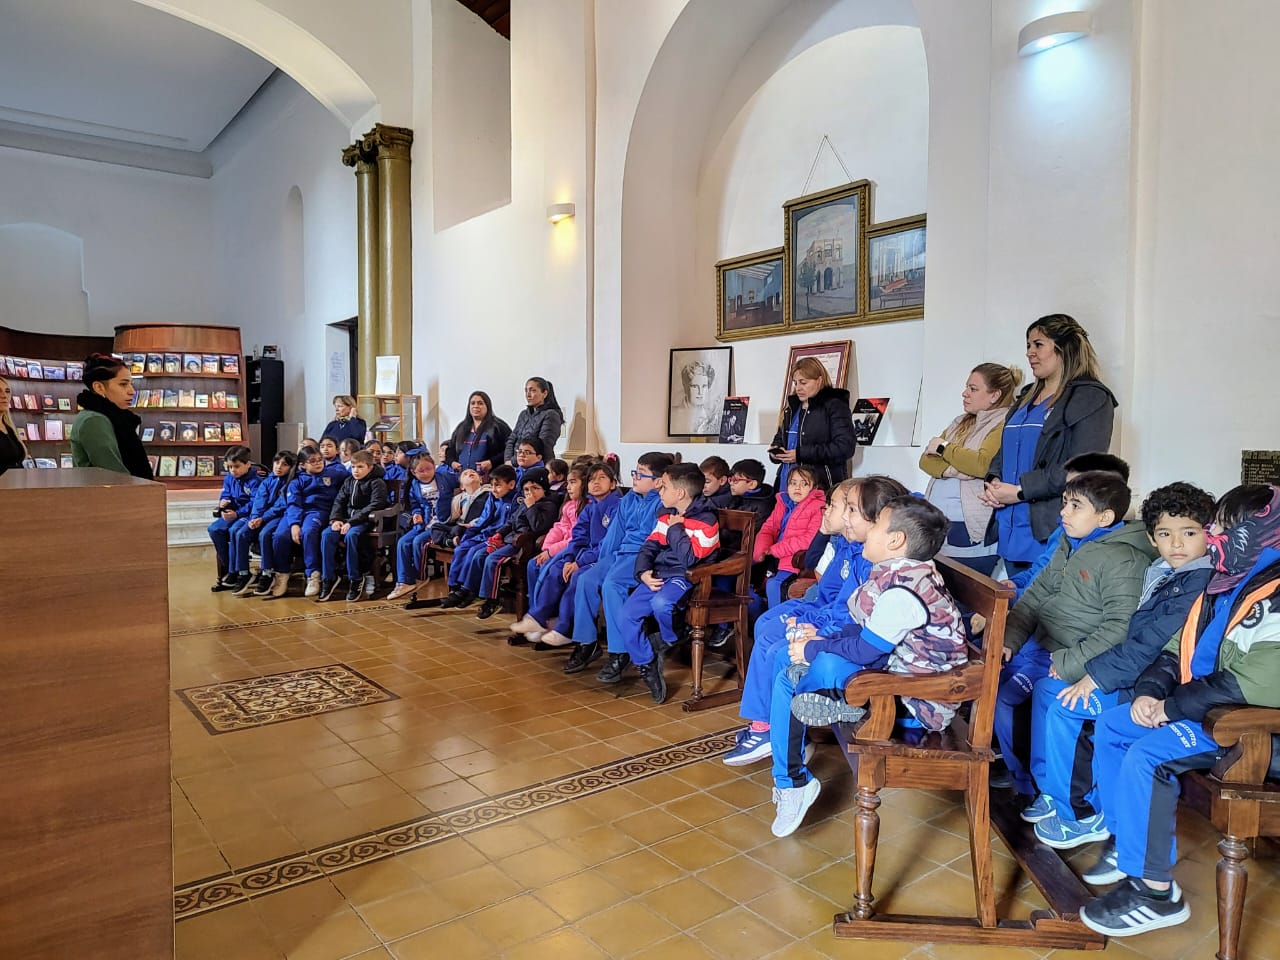 San Luis Libro comenzó con las visitas guiadas para escuelas